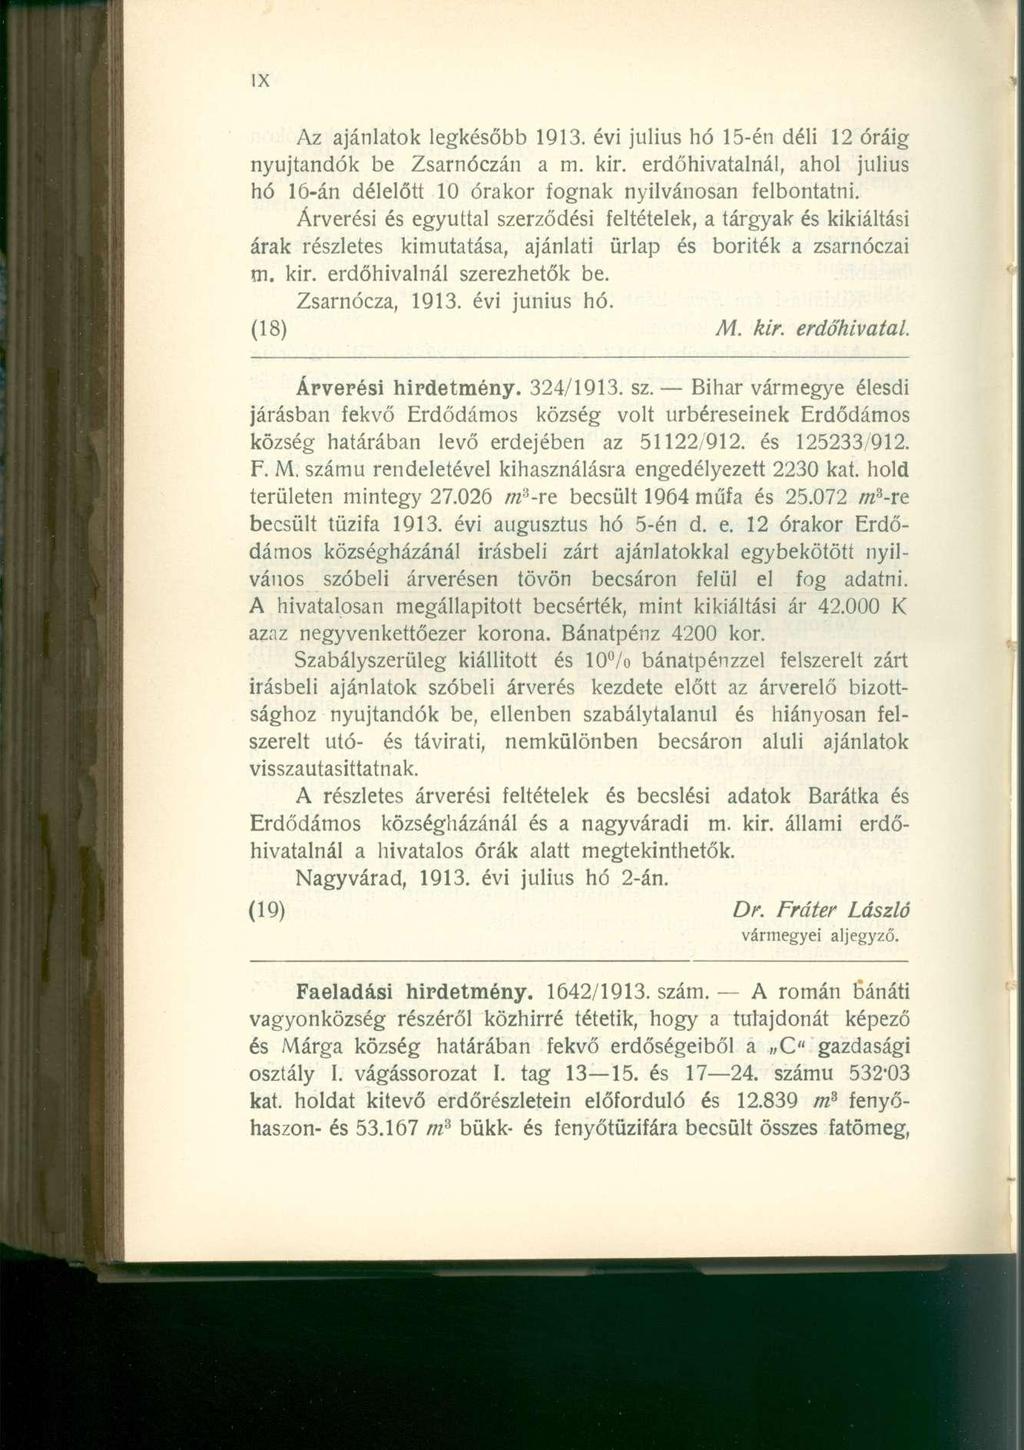 Az ajánlatok legkésőbb 1913. évi július hó 15-én déli 12 óráig nyújtandók be Zsarnóczán a m. kir. erdőhivatalnál, ahol július hó 16-án délelőtt 10 órakor fognak nyilvánosan felbontatni.